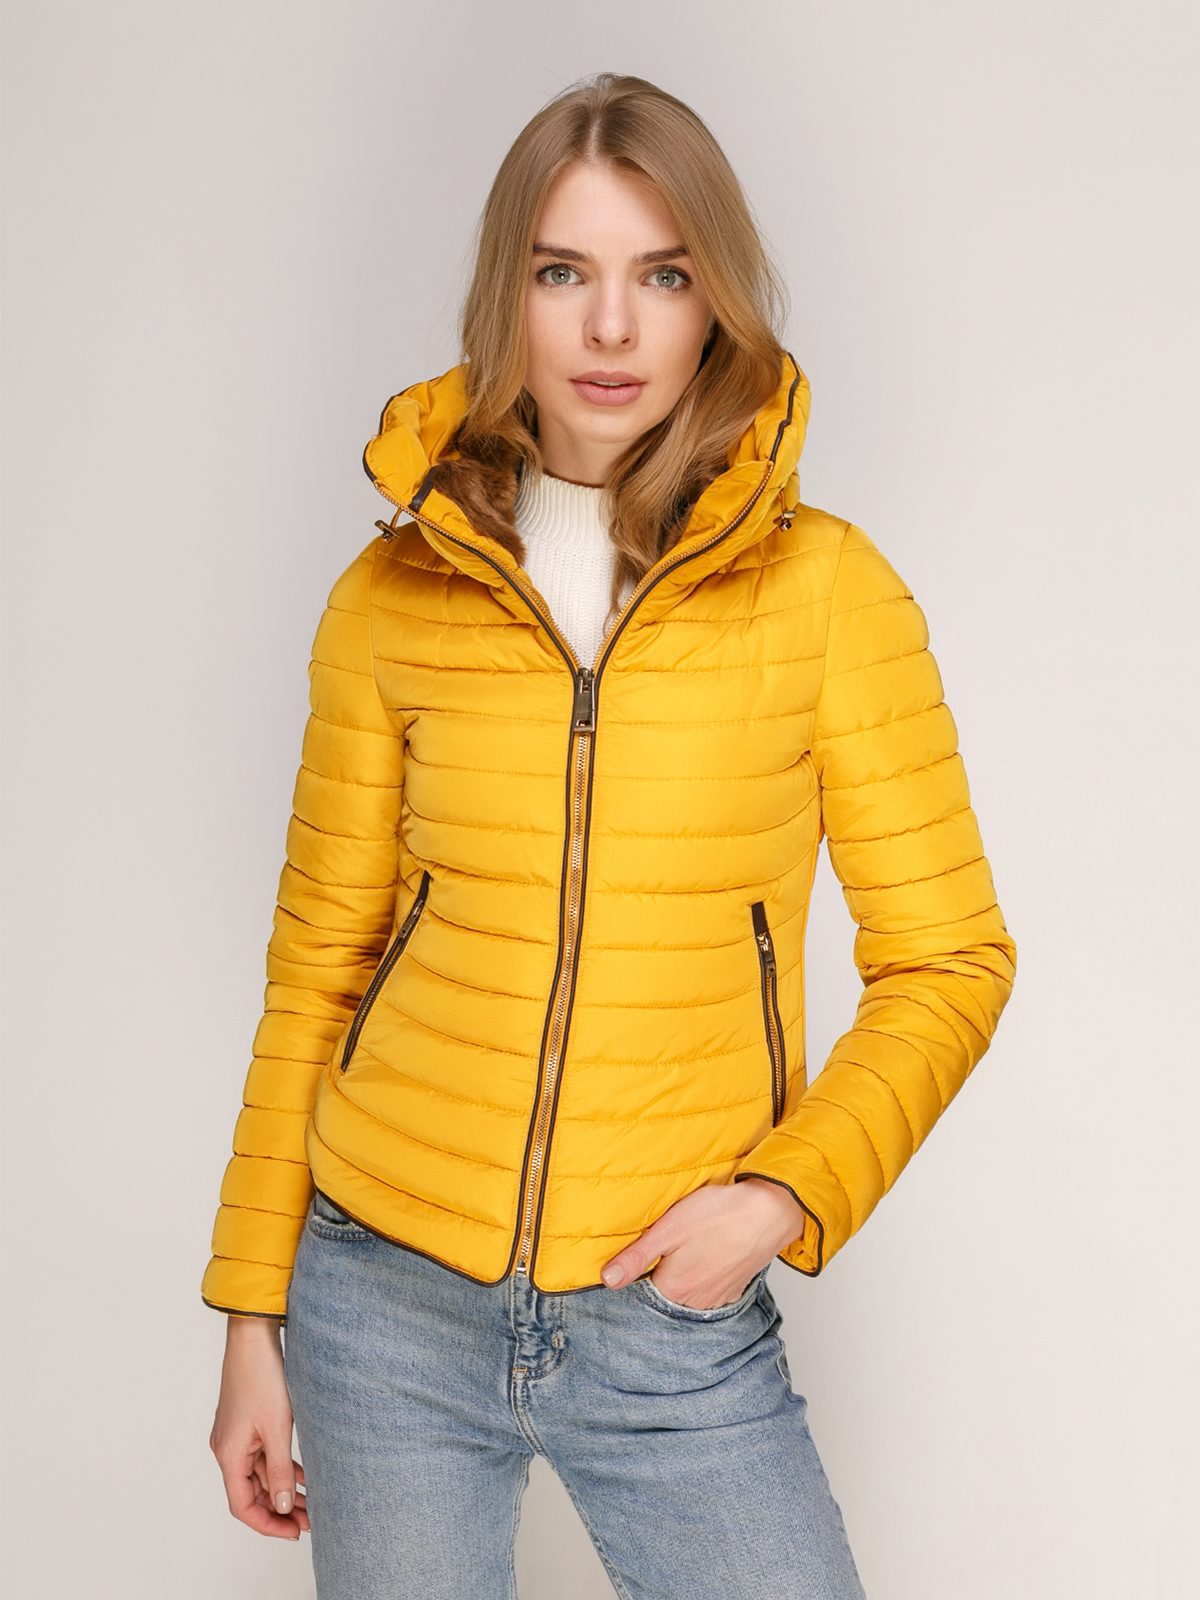 Zara желтая куртка